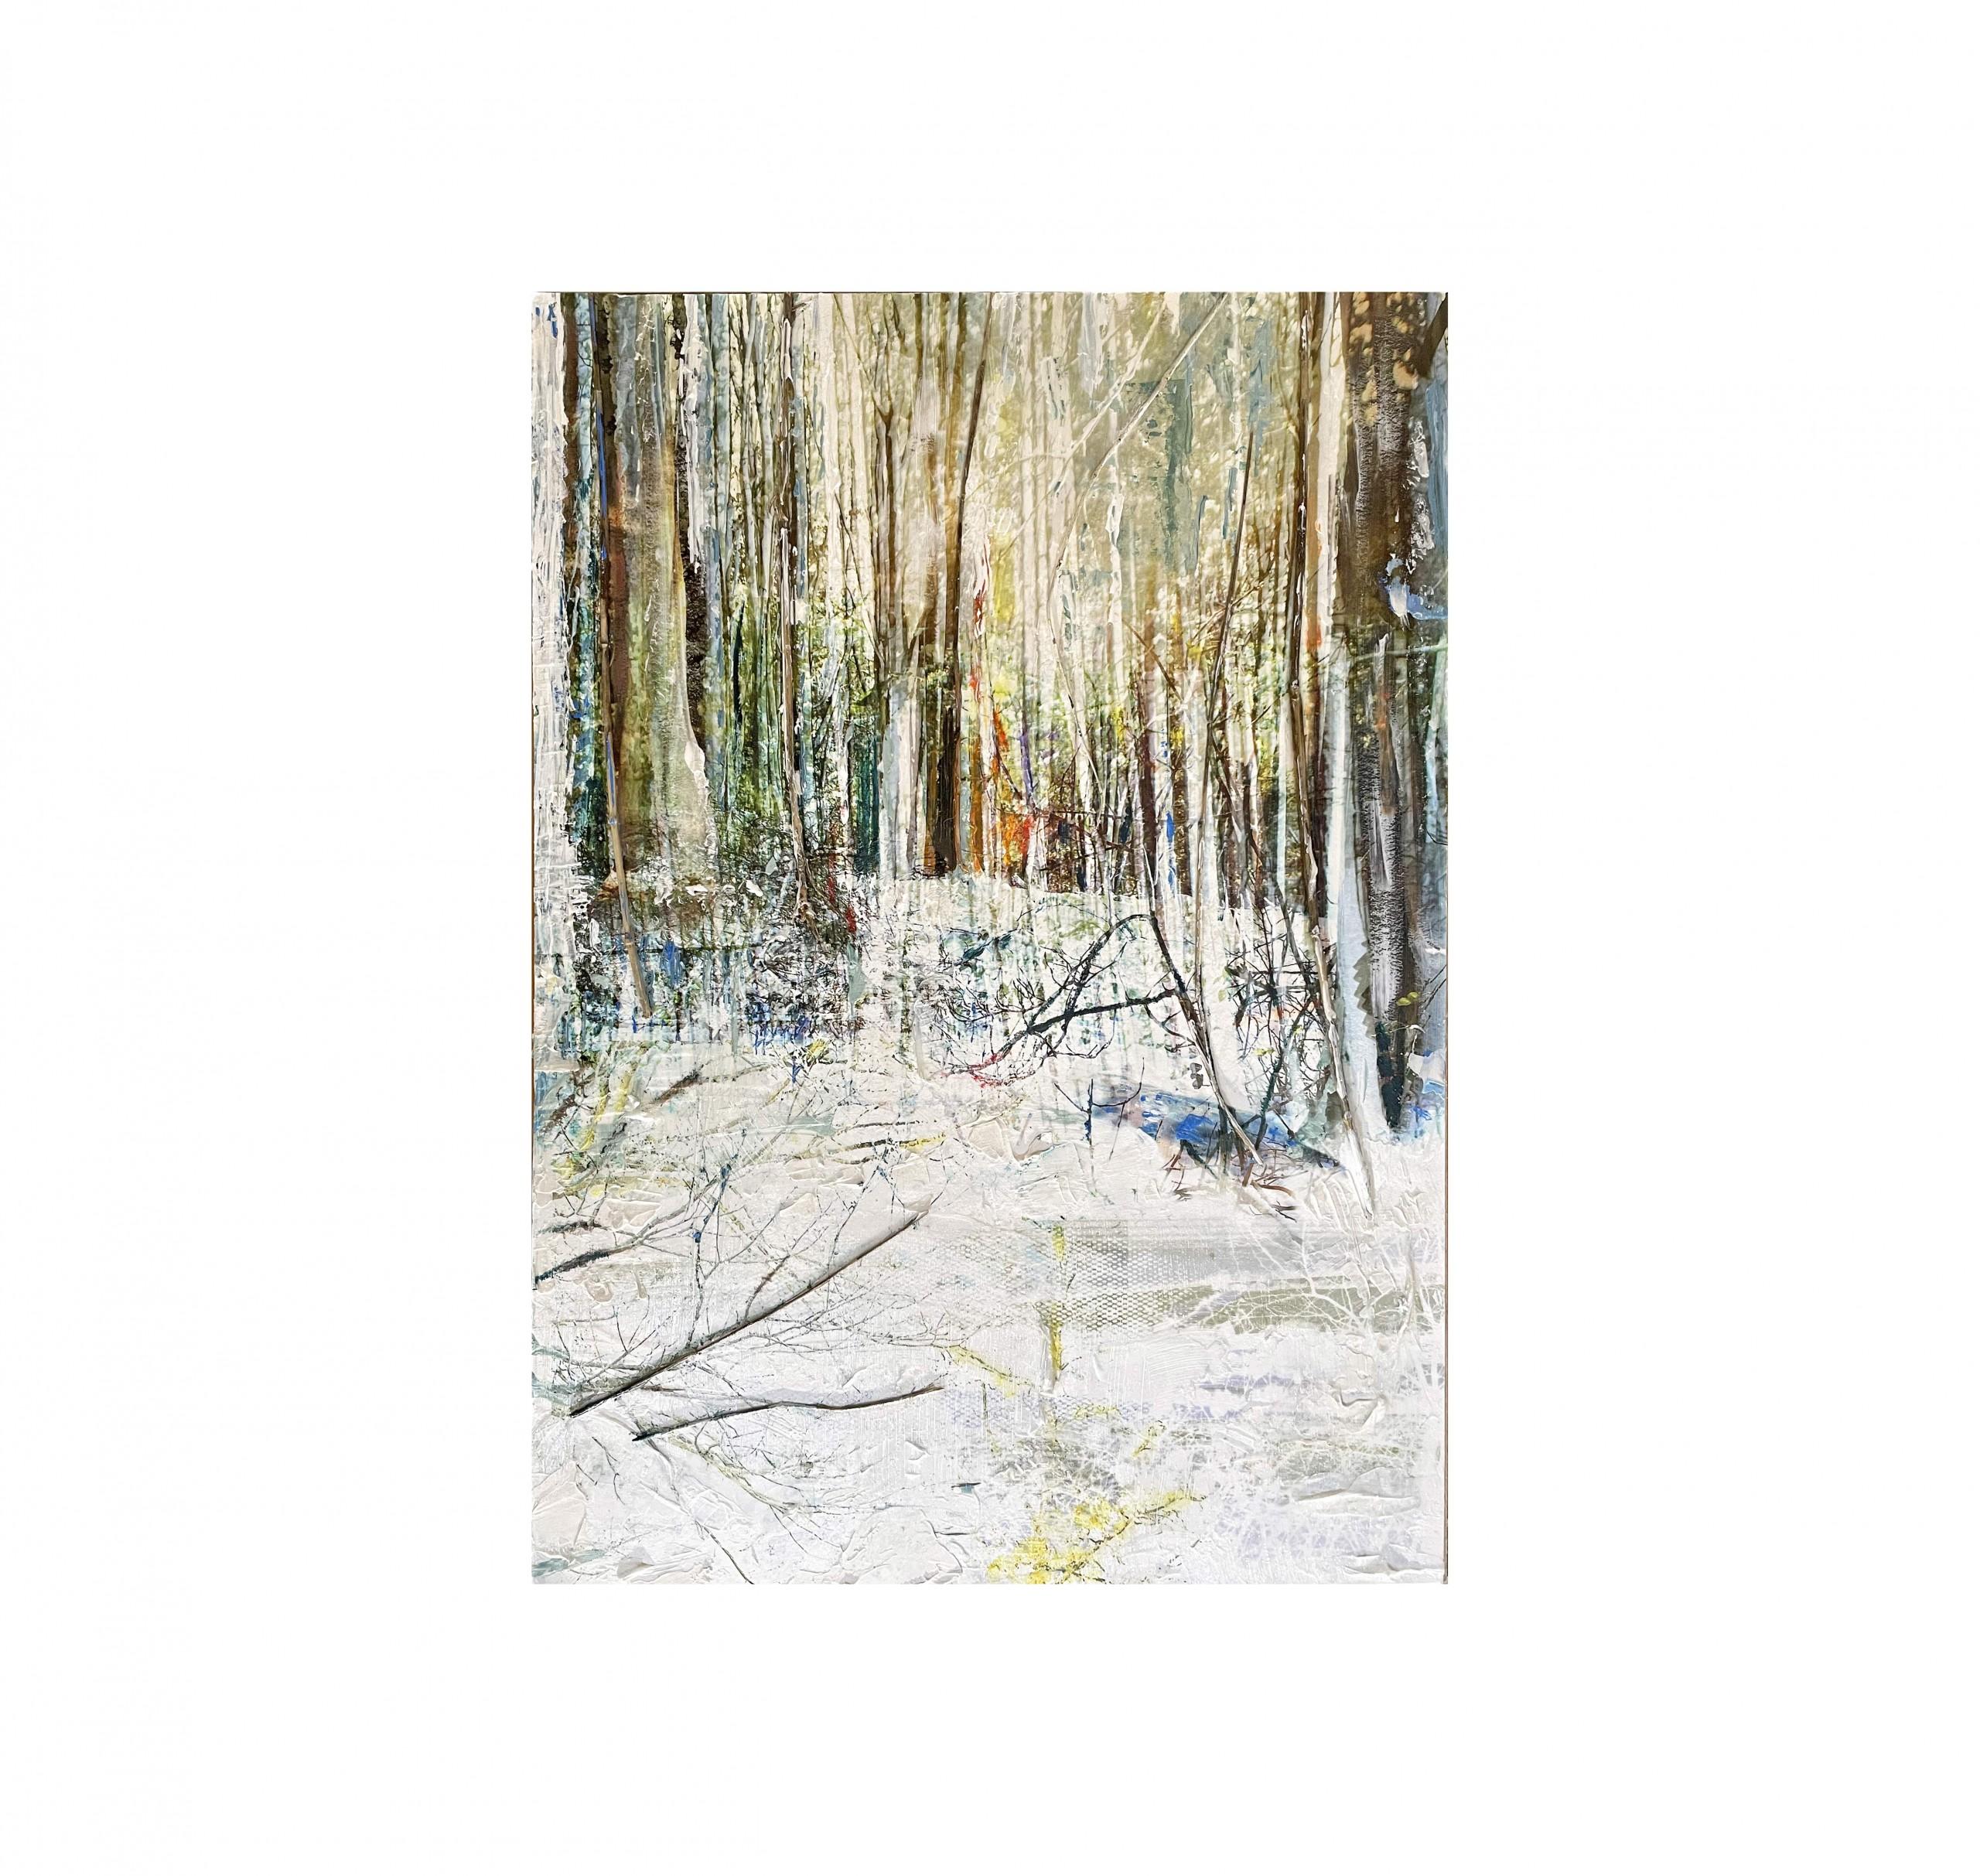 Die Hölzer sind im Wald gehalten – Painting von Gill Storr